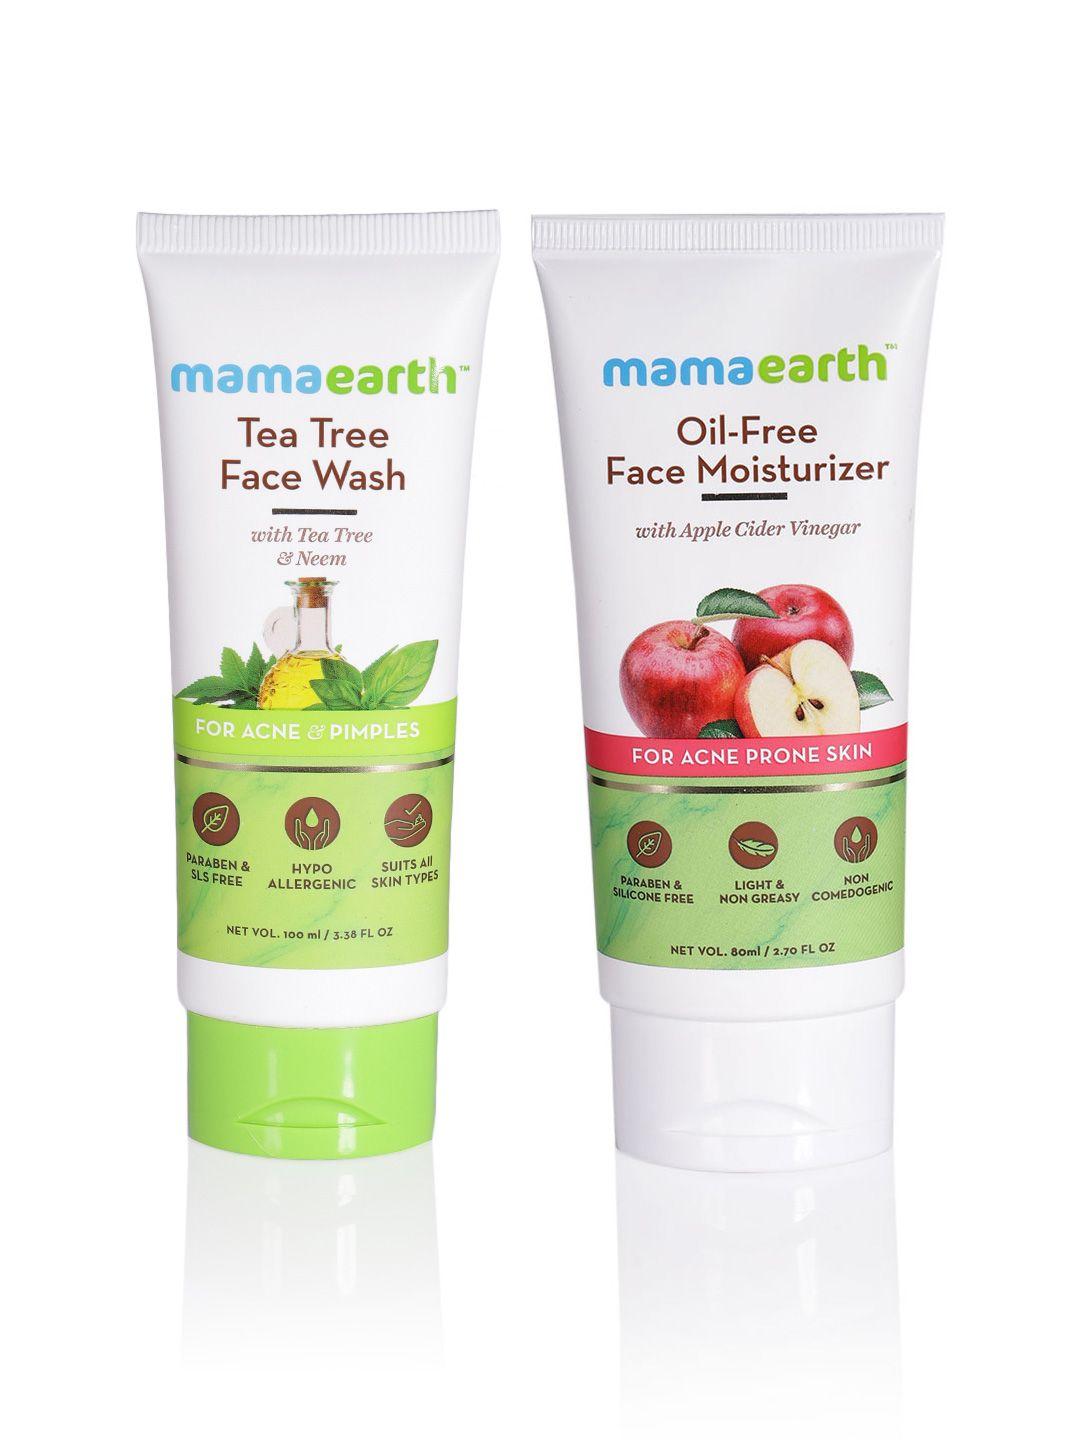 mamaearth unisex set of tea tree face wash & oil-free face moisturizer